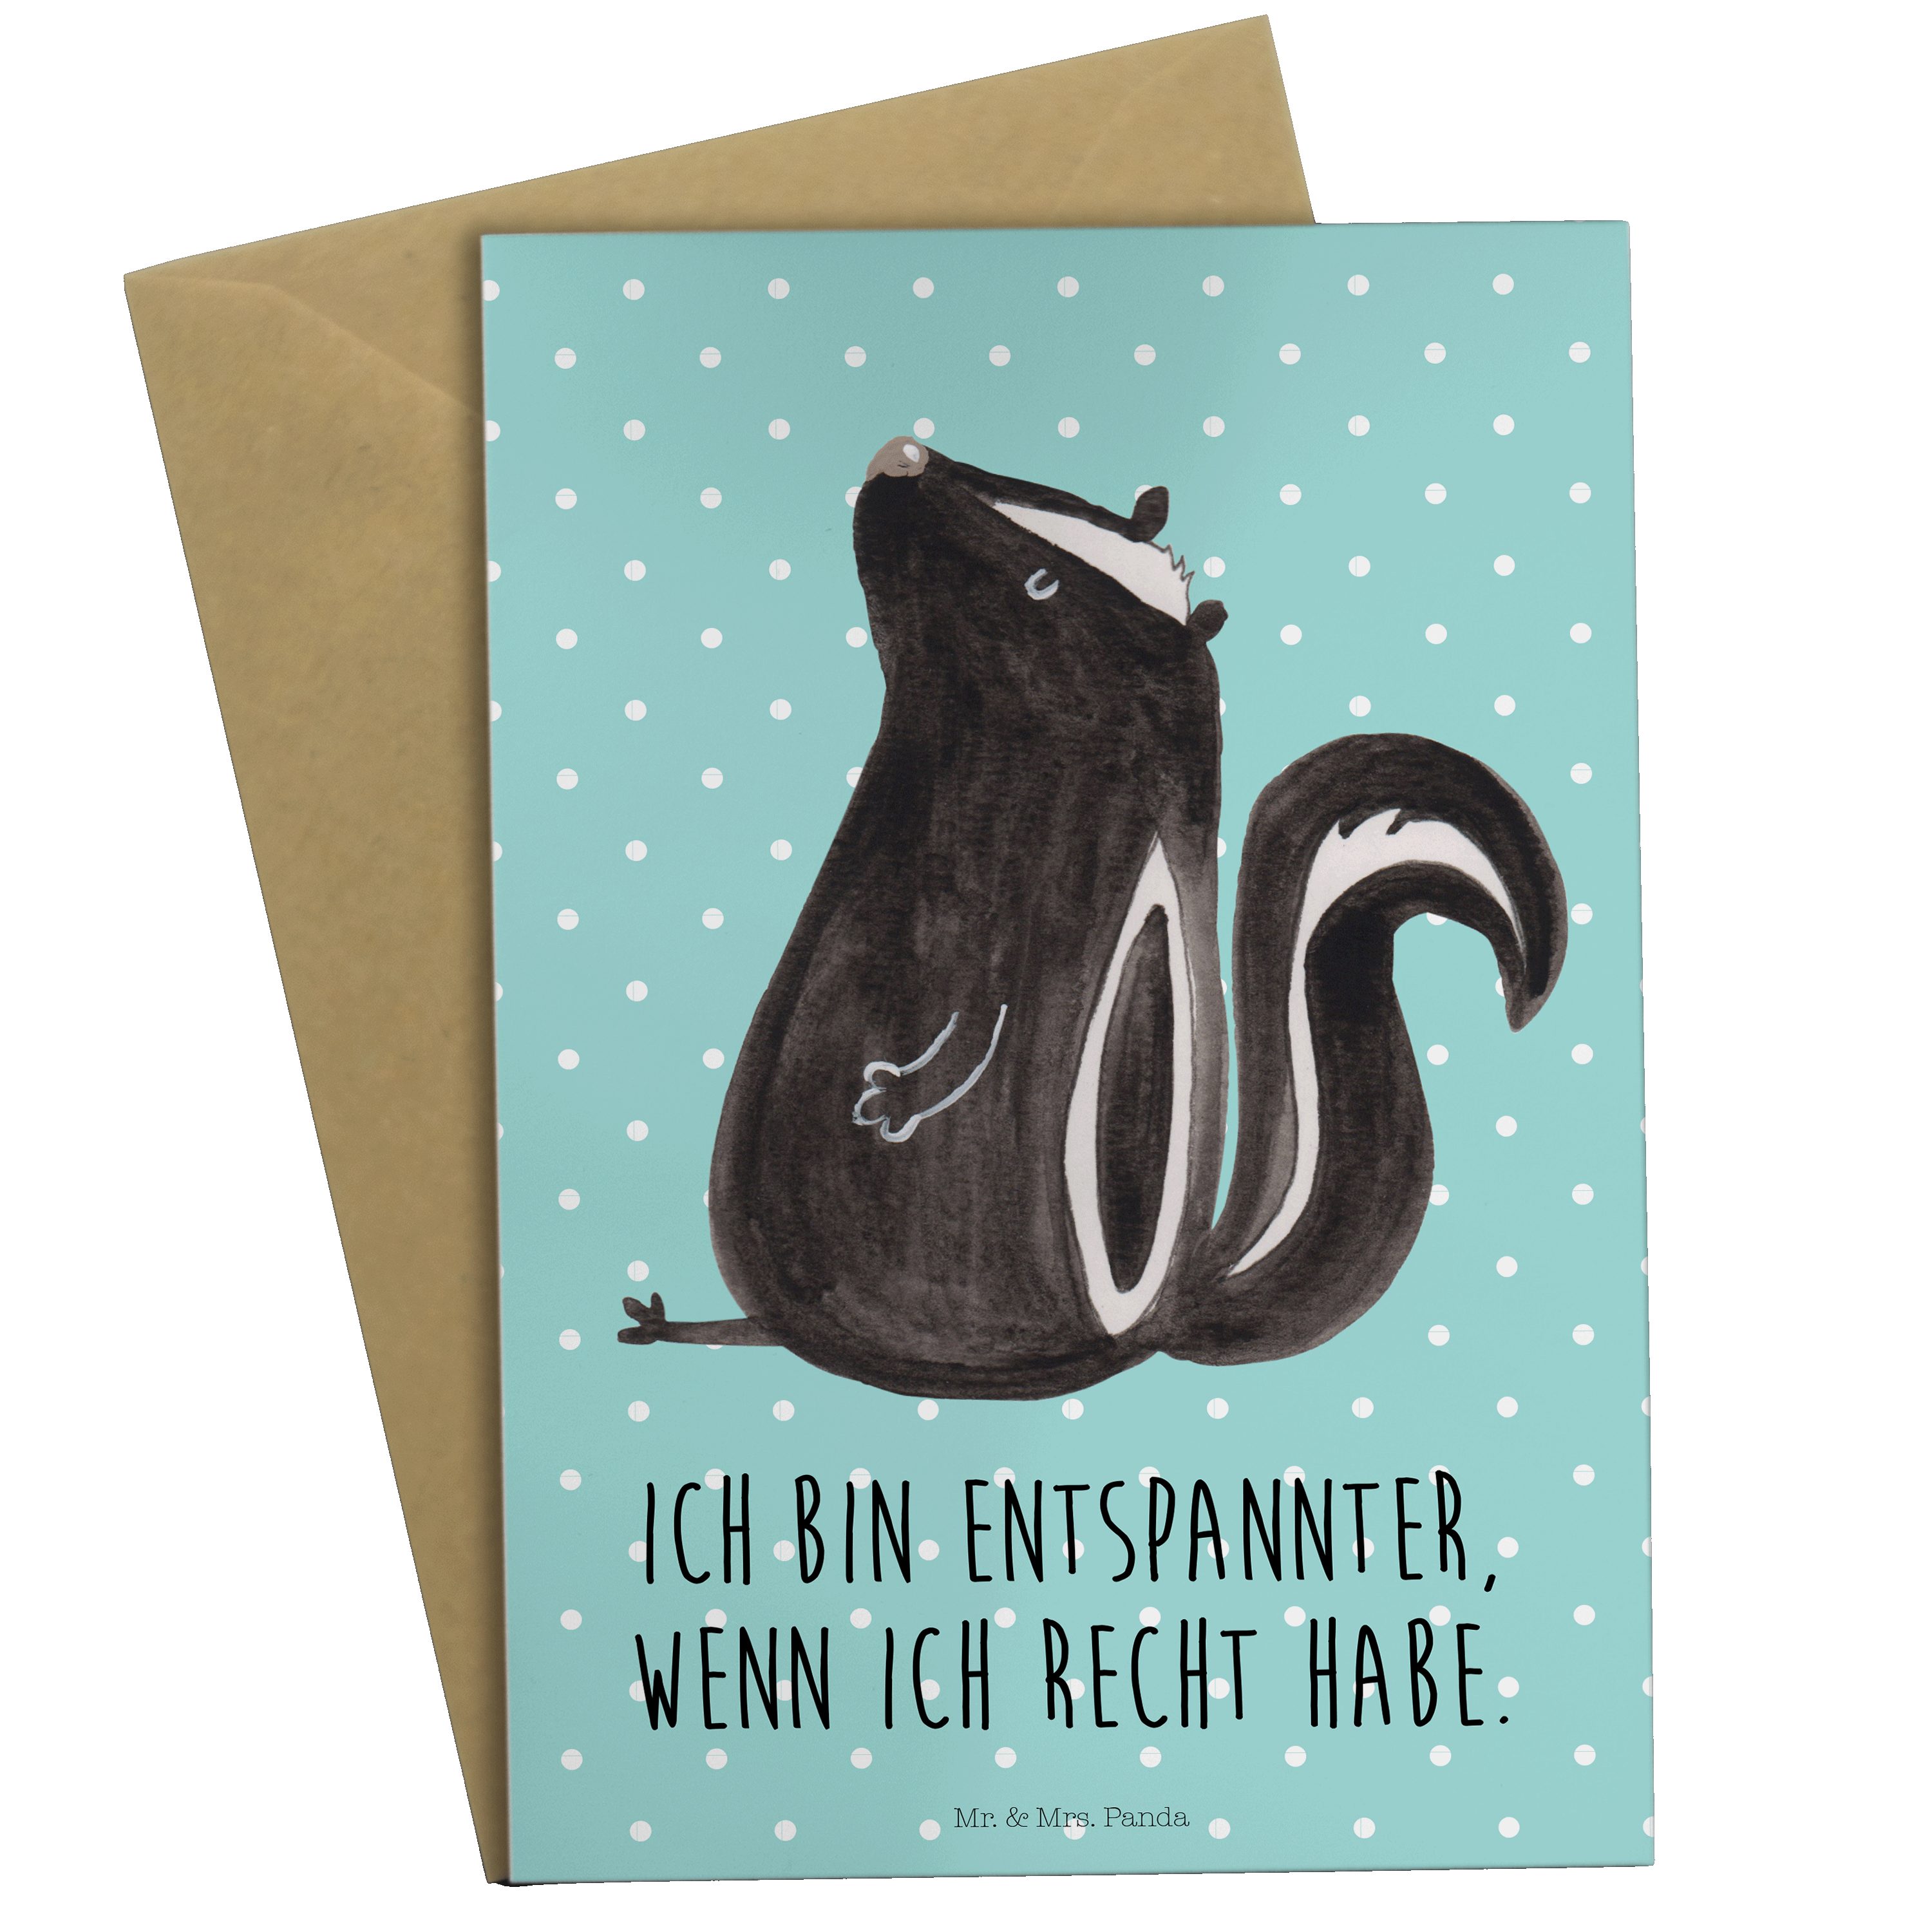 Mr. & Mrs. Panda sitzend - Pastell Türkis Grußkarte Geschenk, - Geburtstagskarte, Stinktier Einl